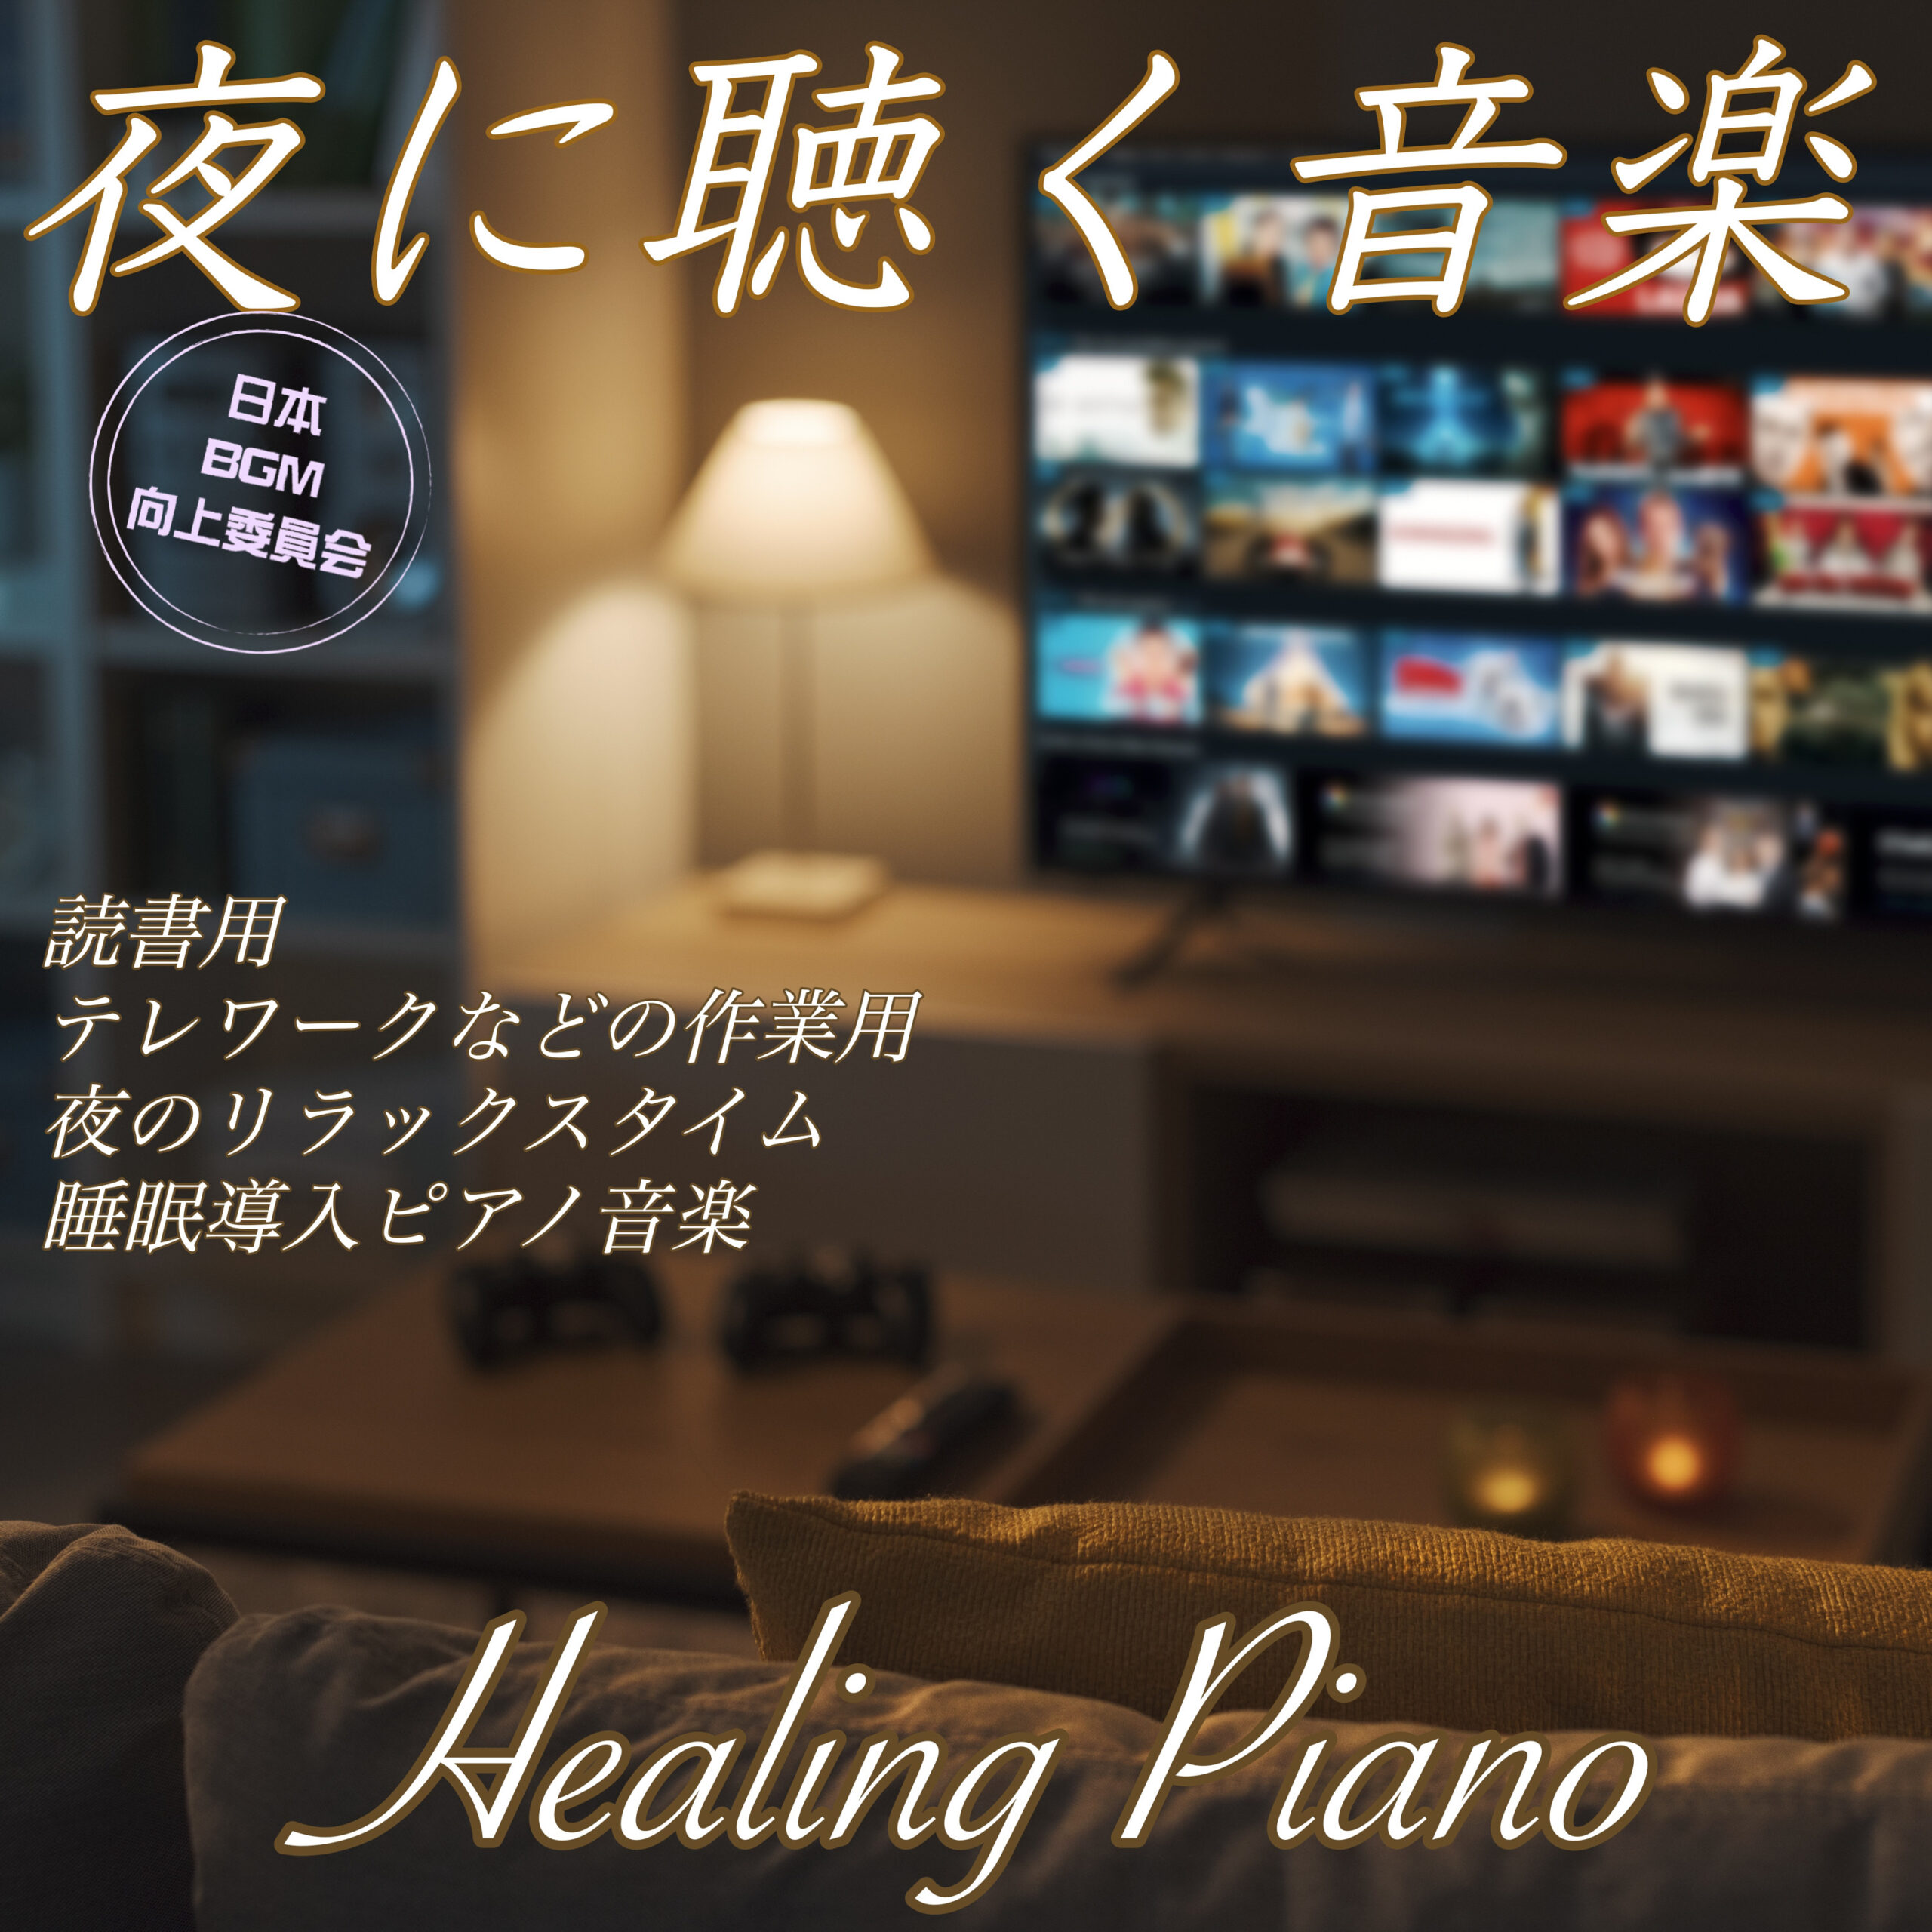 夜に聴く音楽 Healing Piano 読書用  テレワークなどの作業用 夜のリラックスタイム 睡眠導入ピアノ音楽